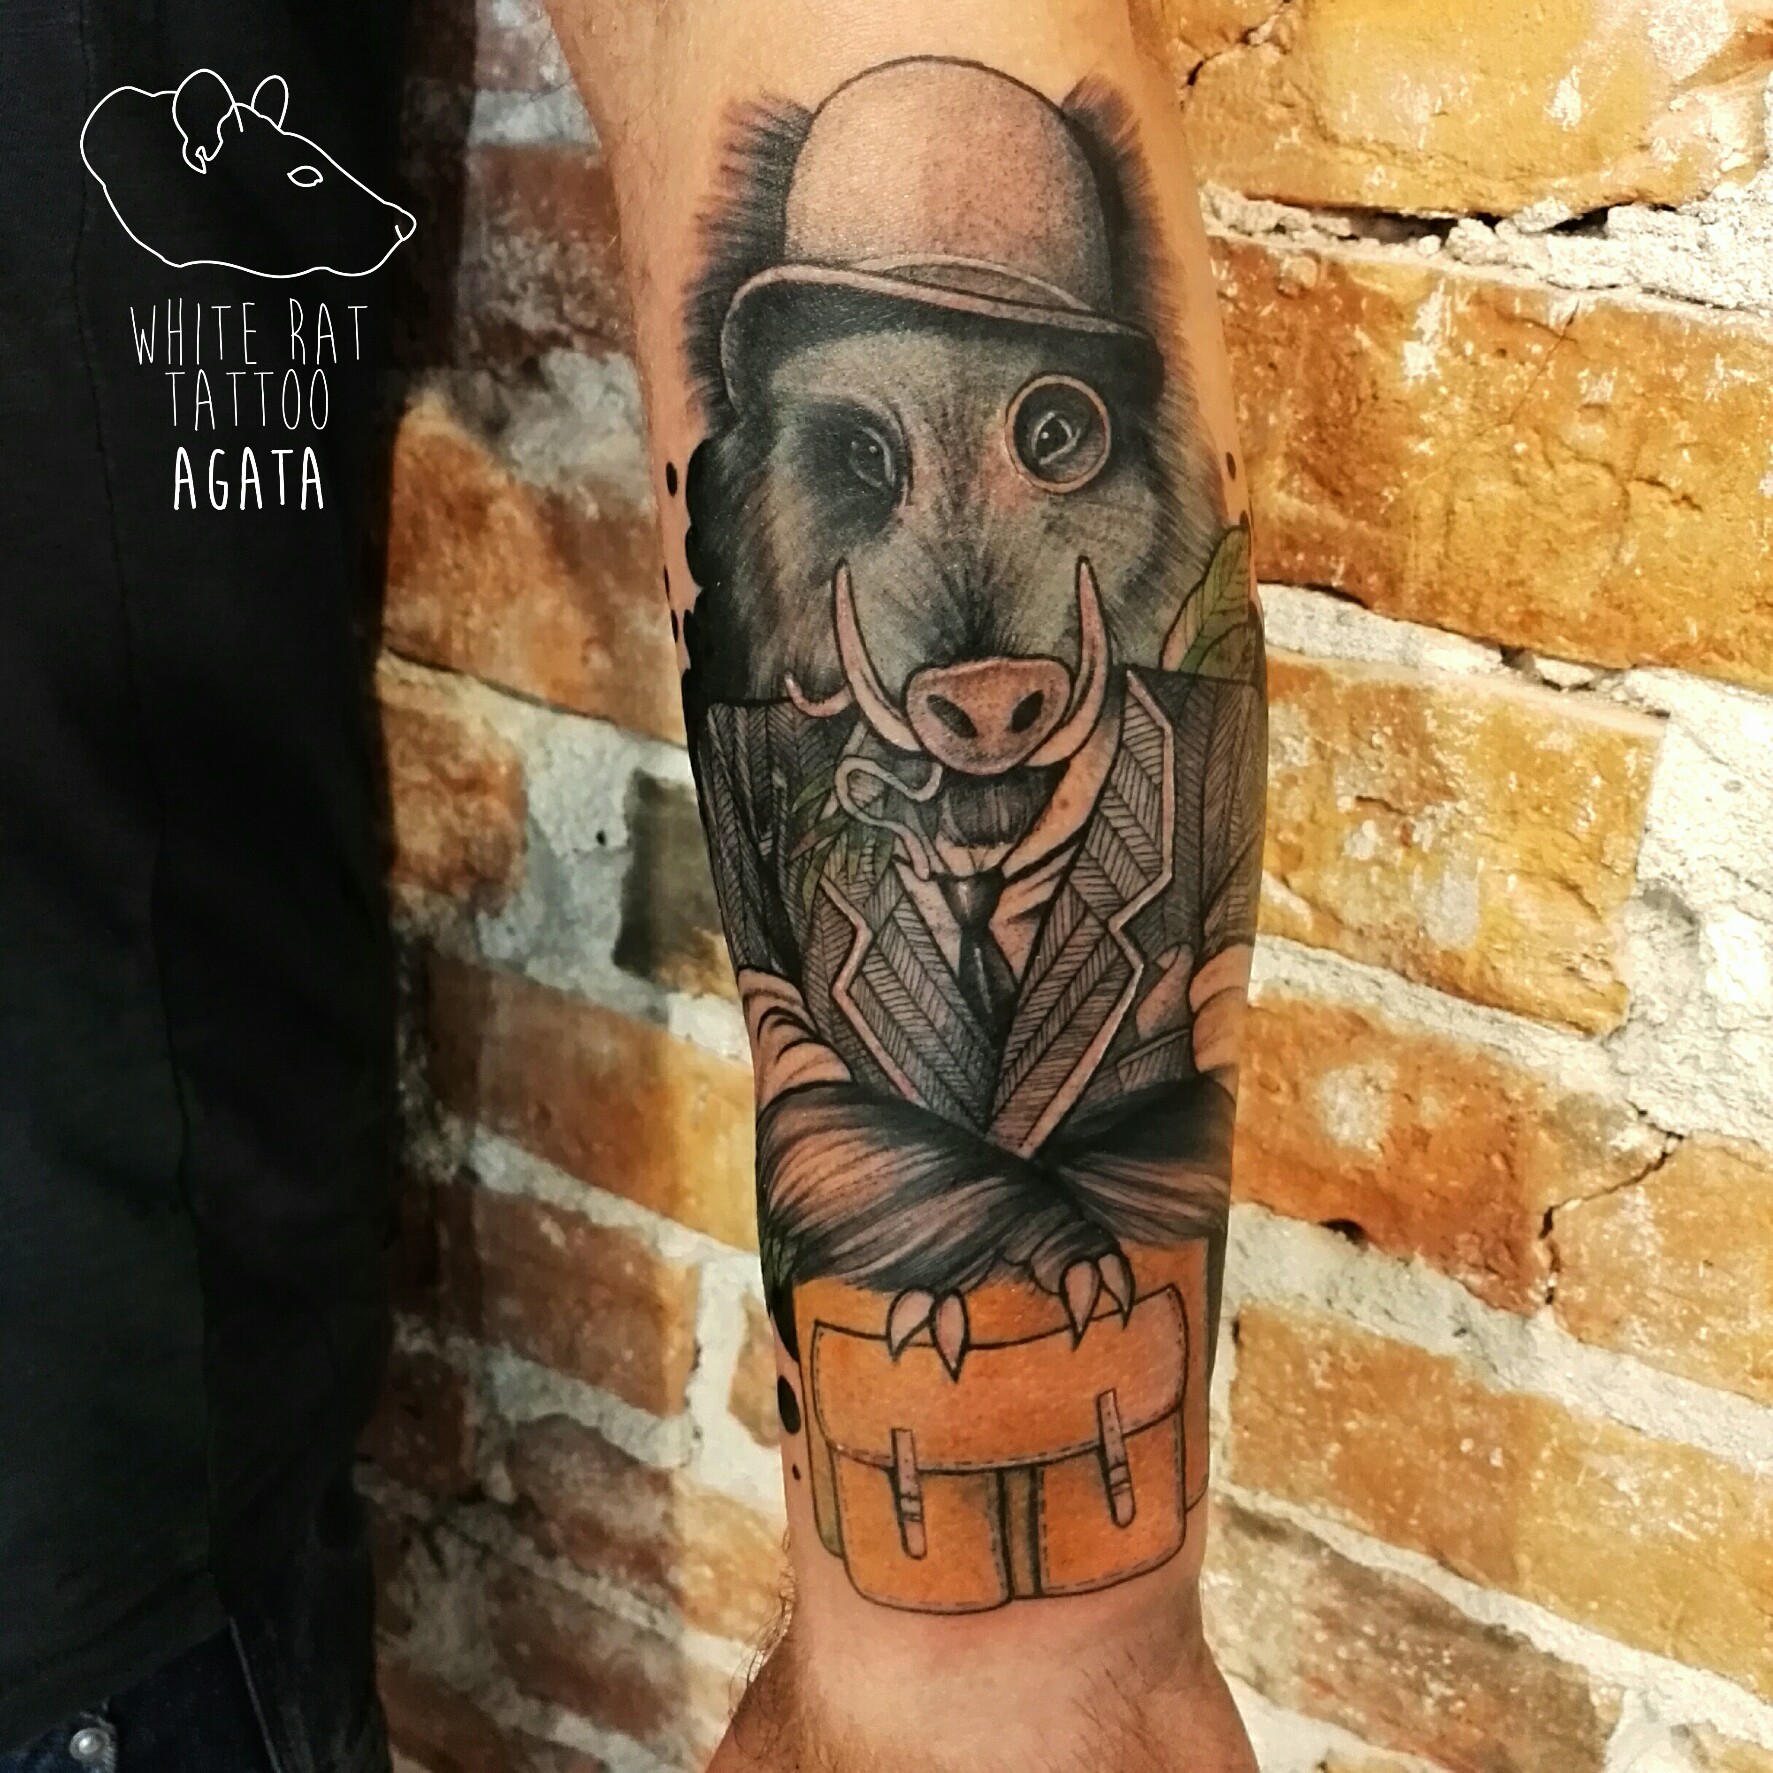 Tatuaż eleganckiego dzika wykonany przez Agatę Kacperczyk w studio tatuażu White Rat Tattoo Warszawa